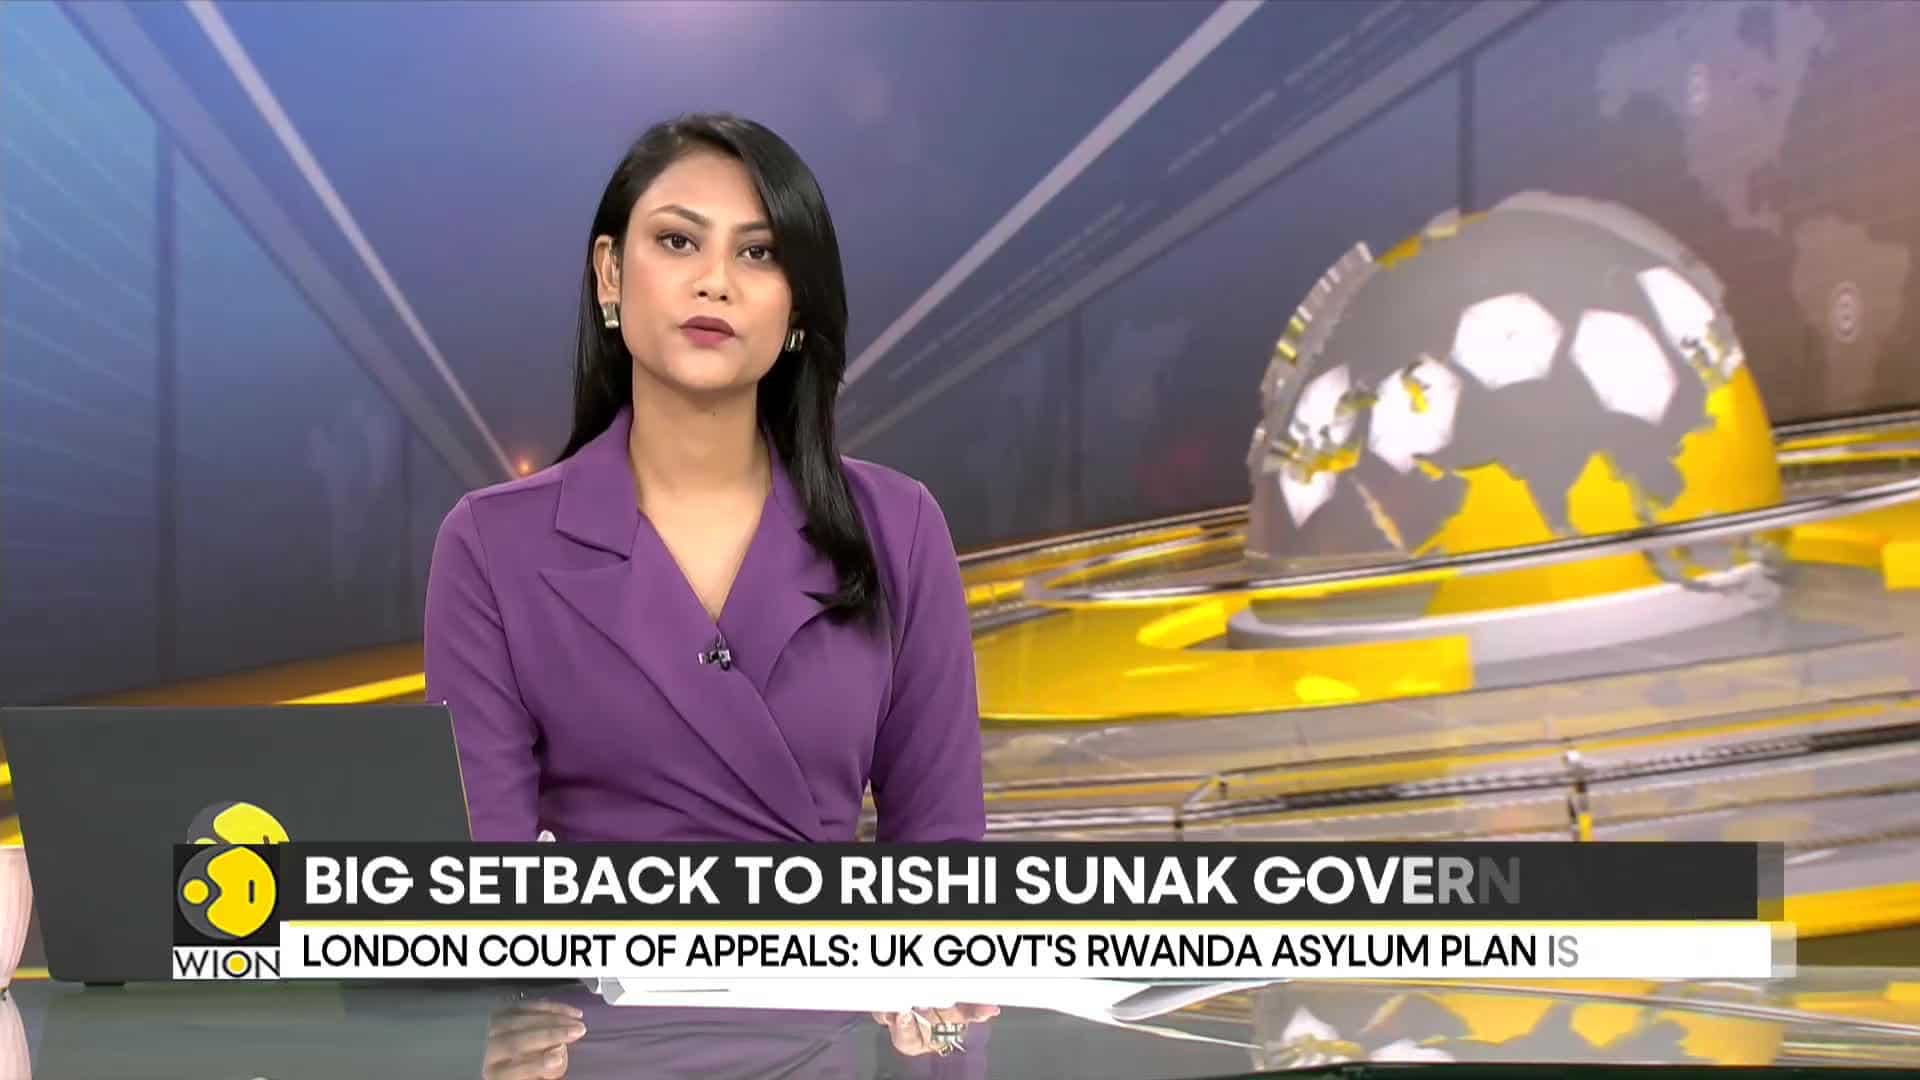 Big setback to Rishi Sunak's govt: Rwanda asylum plan announced unlawful